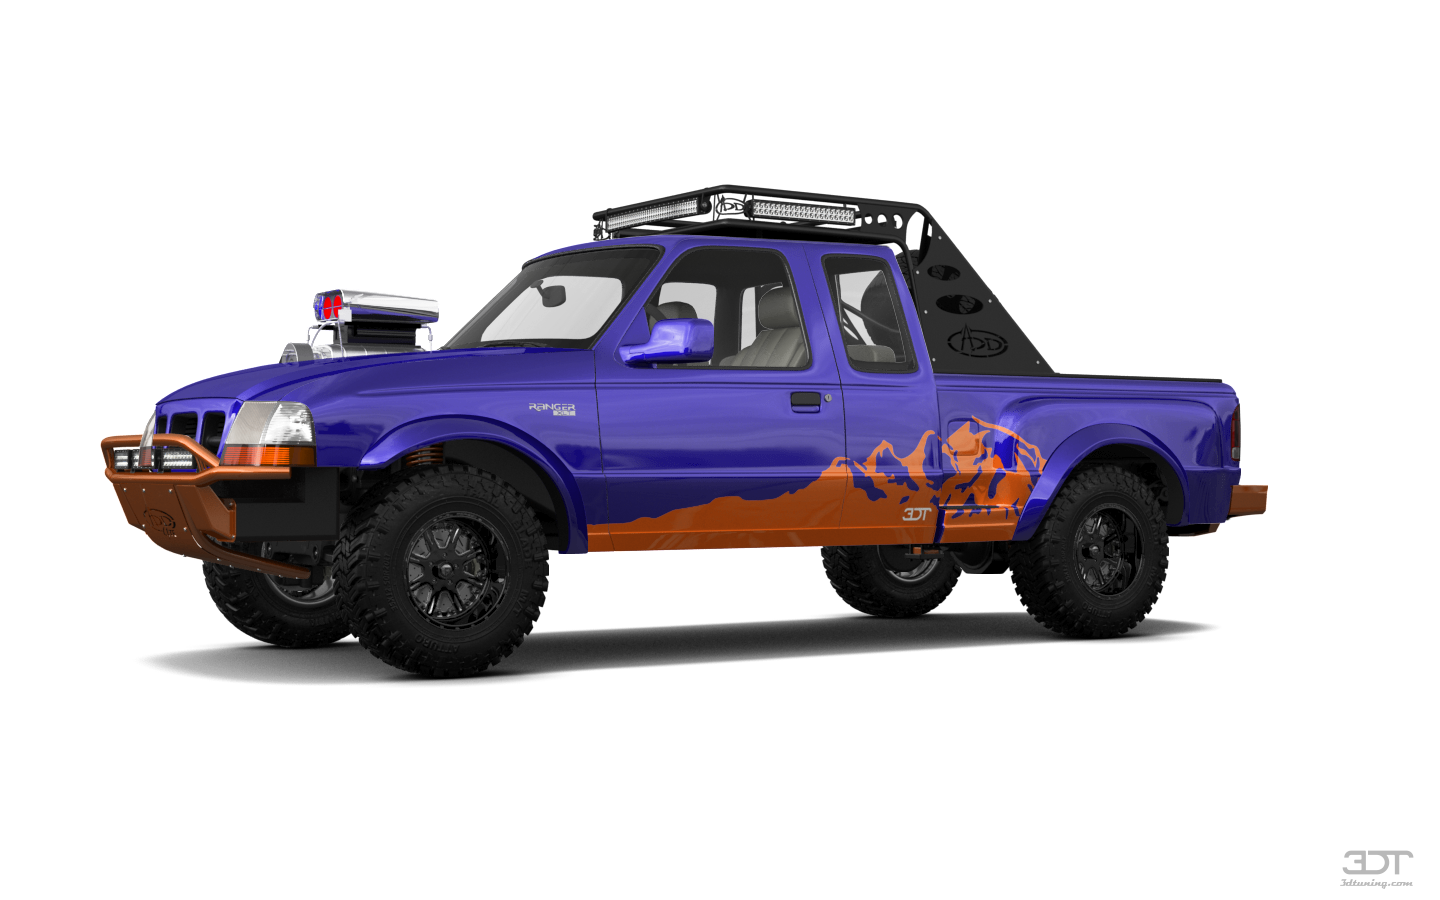 Ford Ranger Flareside 2 Door pickup truck 1998